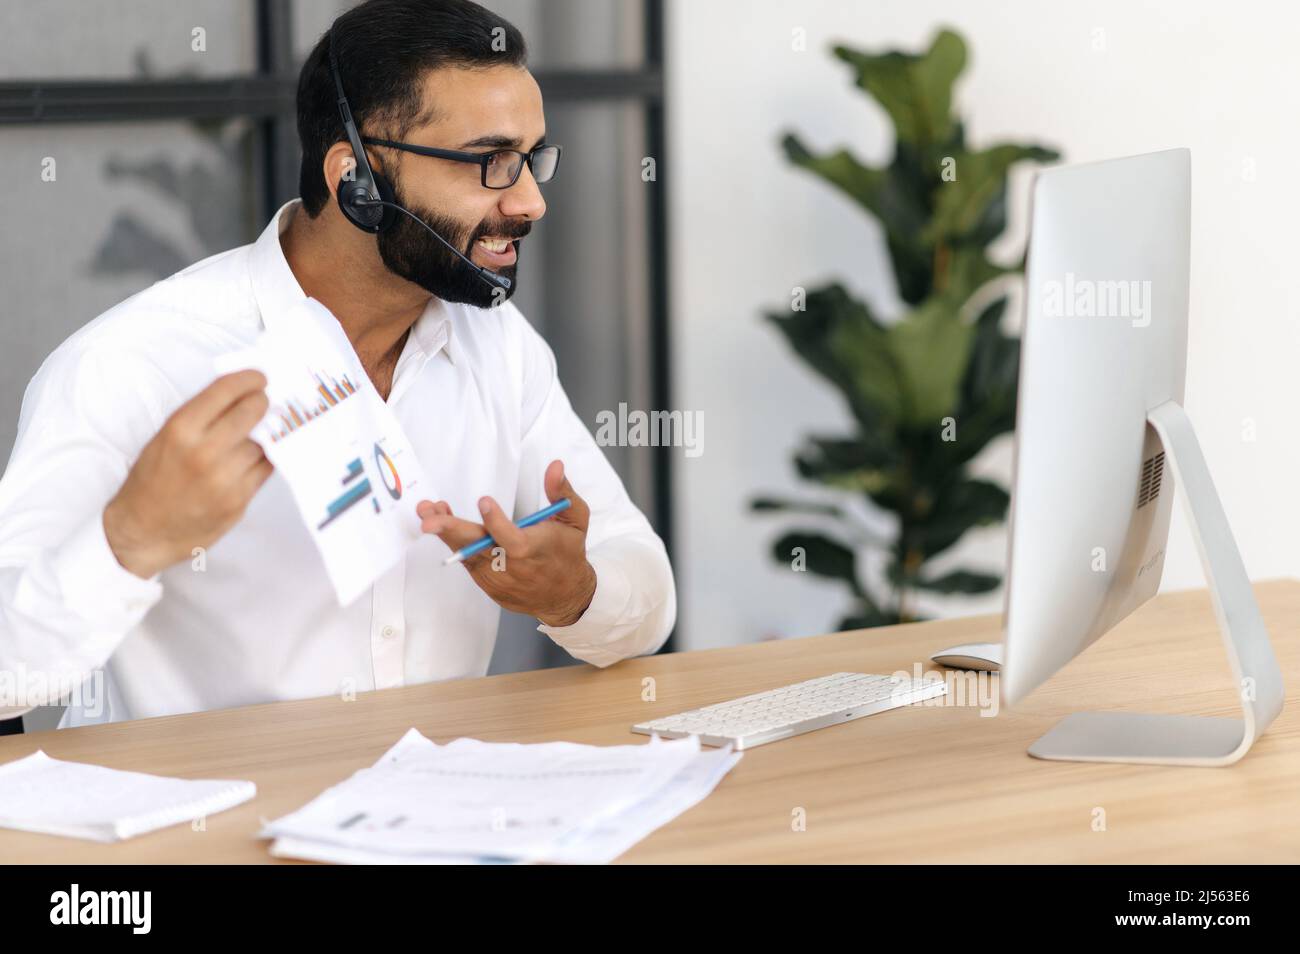 Irritato arrabbiato imprenditore indiano o arabo, influente uomo d'affari, parla tramite videochiamata con i partner, discute e analizza un business report, mostra un grafico per i suoi interlocutori, irritato Foto Stock